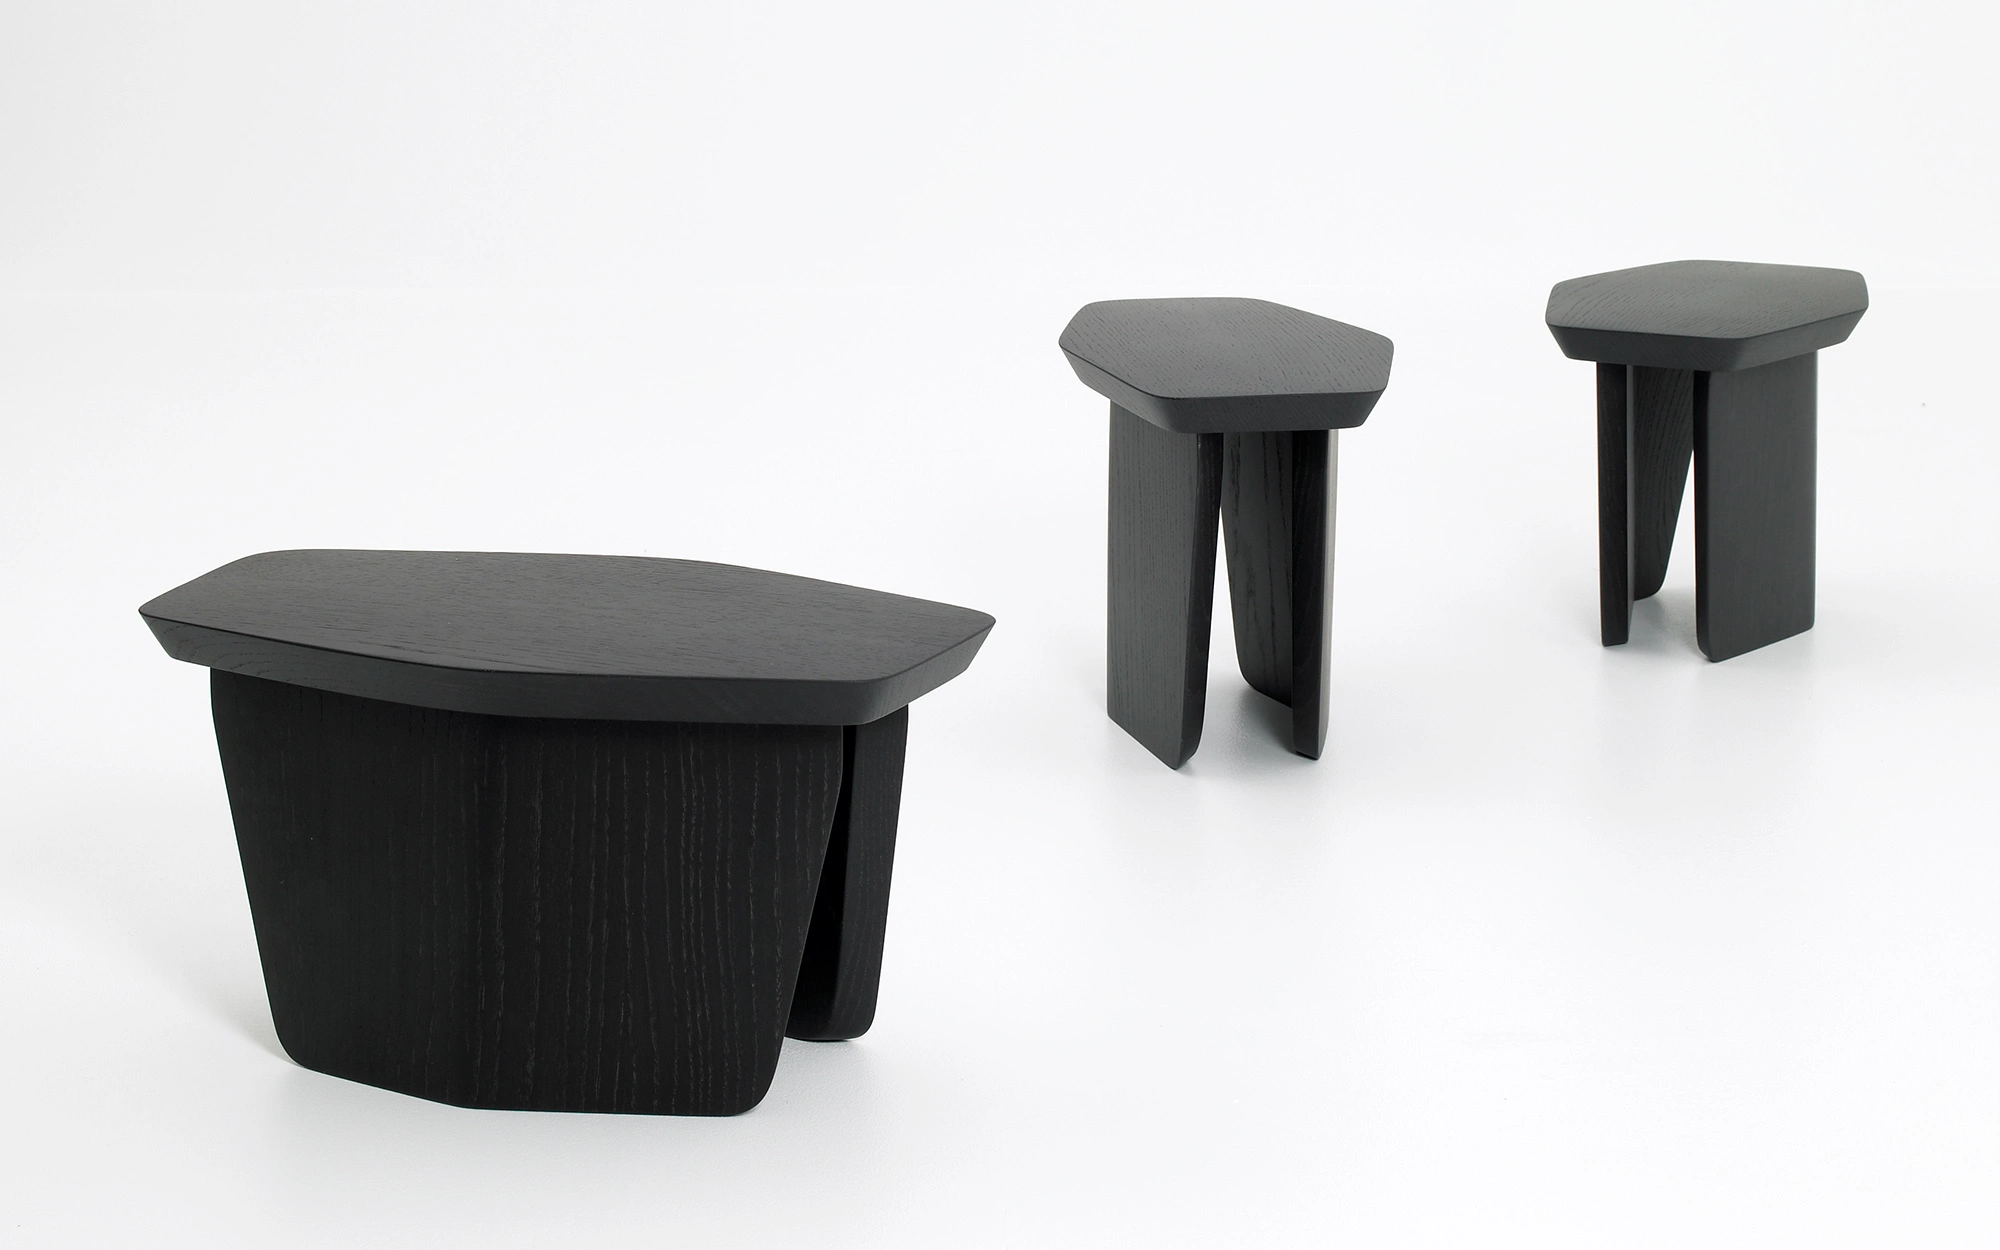 Stool - Ronan & Erwan Bouroullec - Coffee table - Galerie kreo